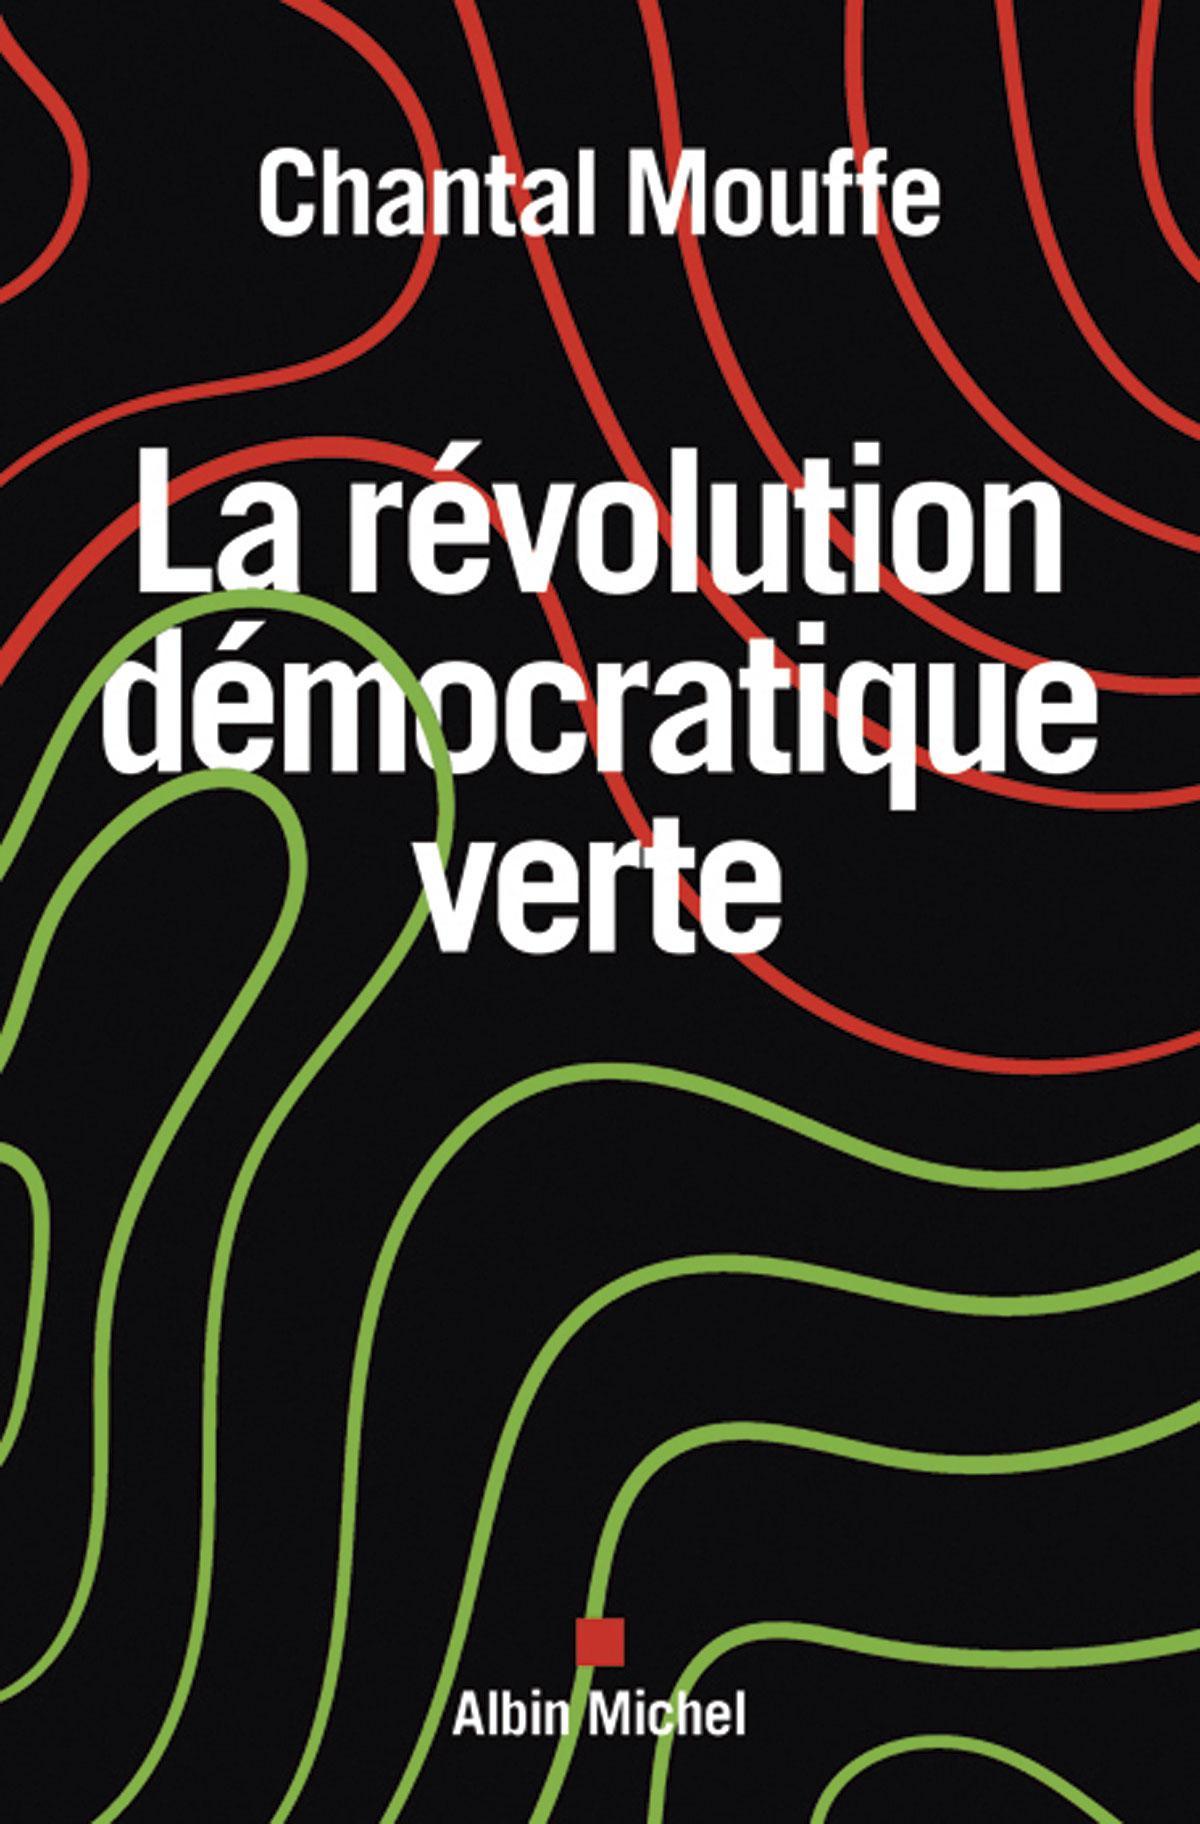 (1) La Révolution démocratique verte. Le pouvoir des affects en politique, par Chantal Mouffe, Albin Michel, 128 p.